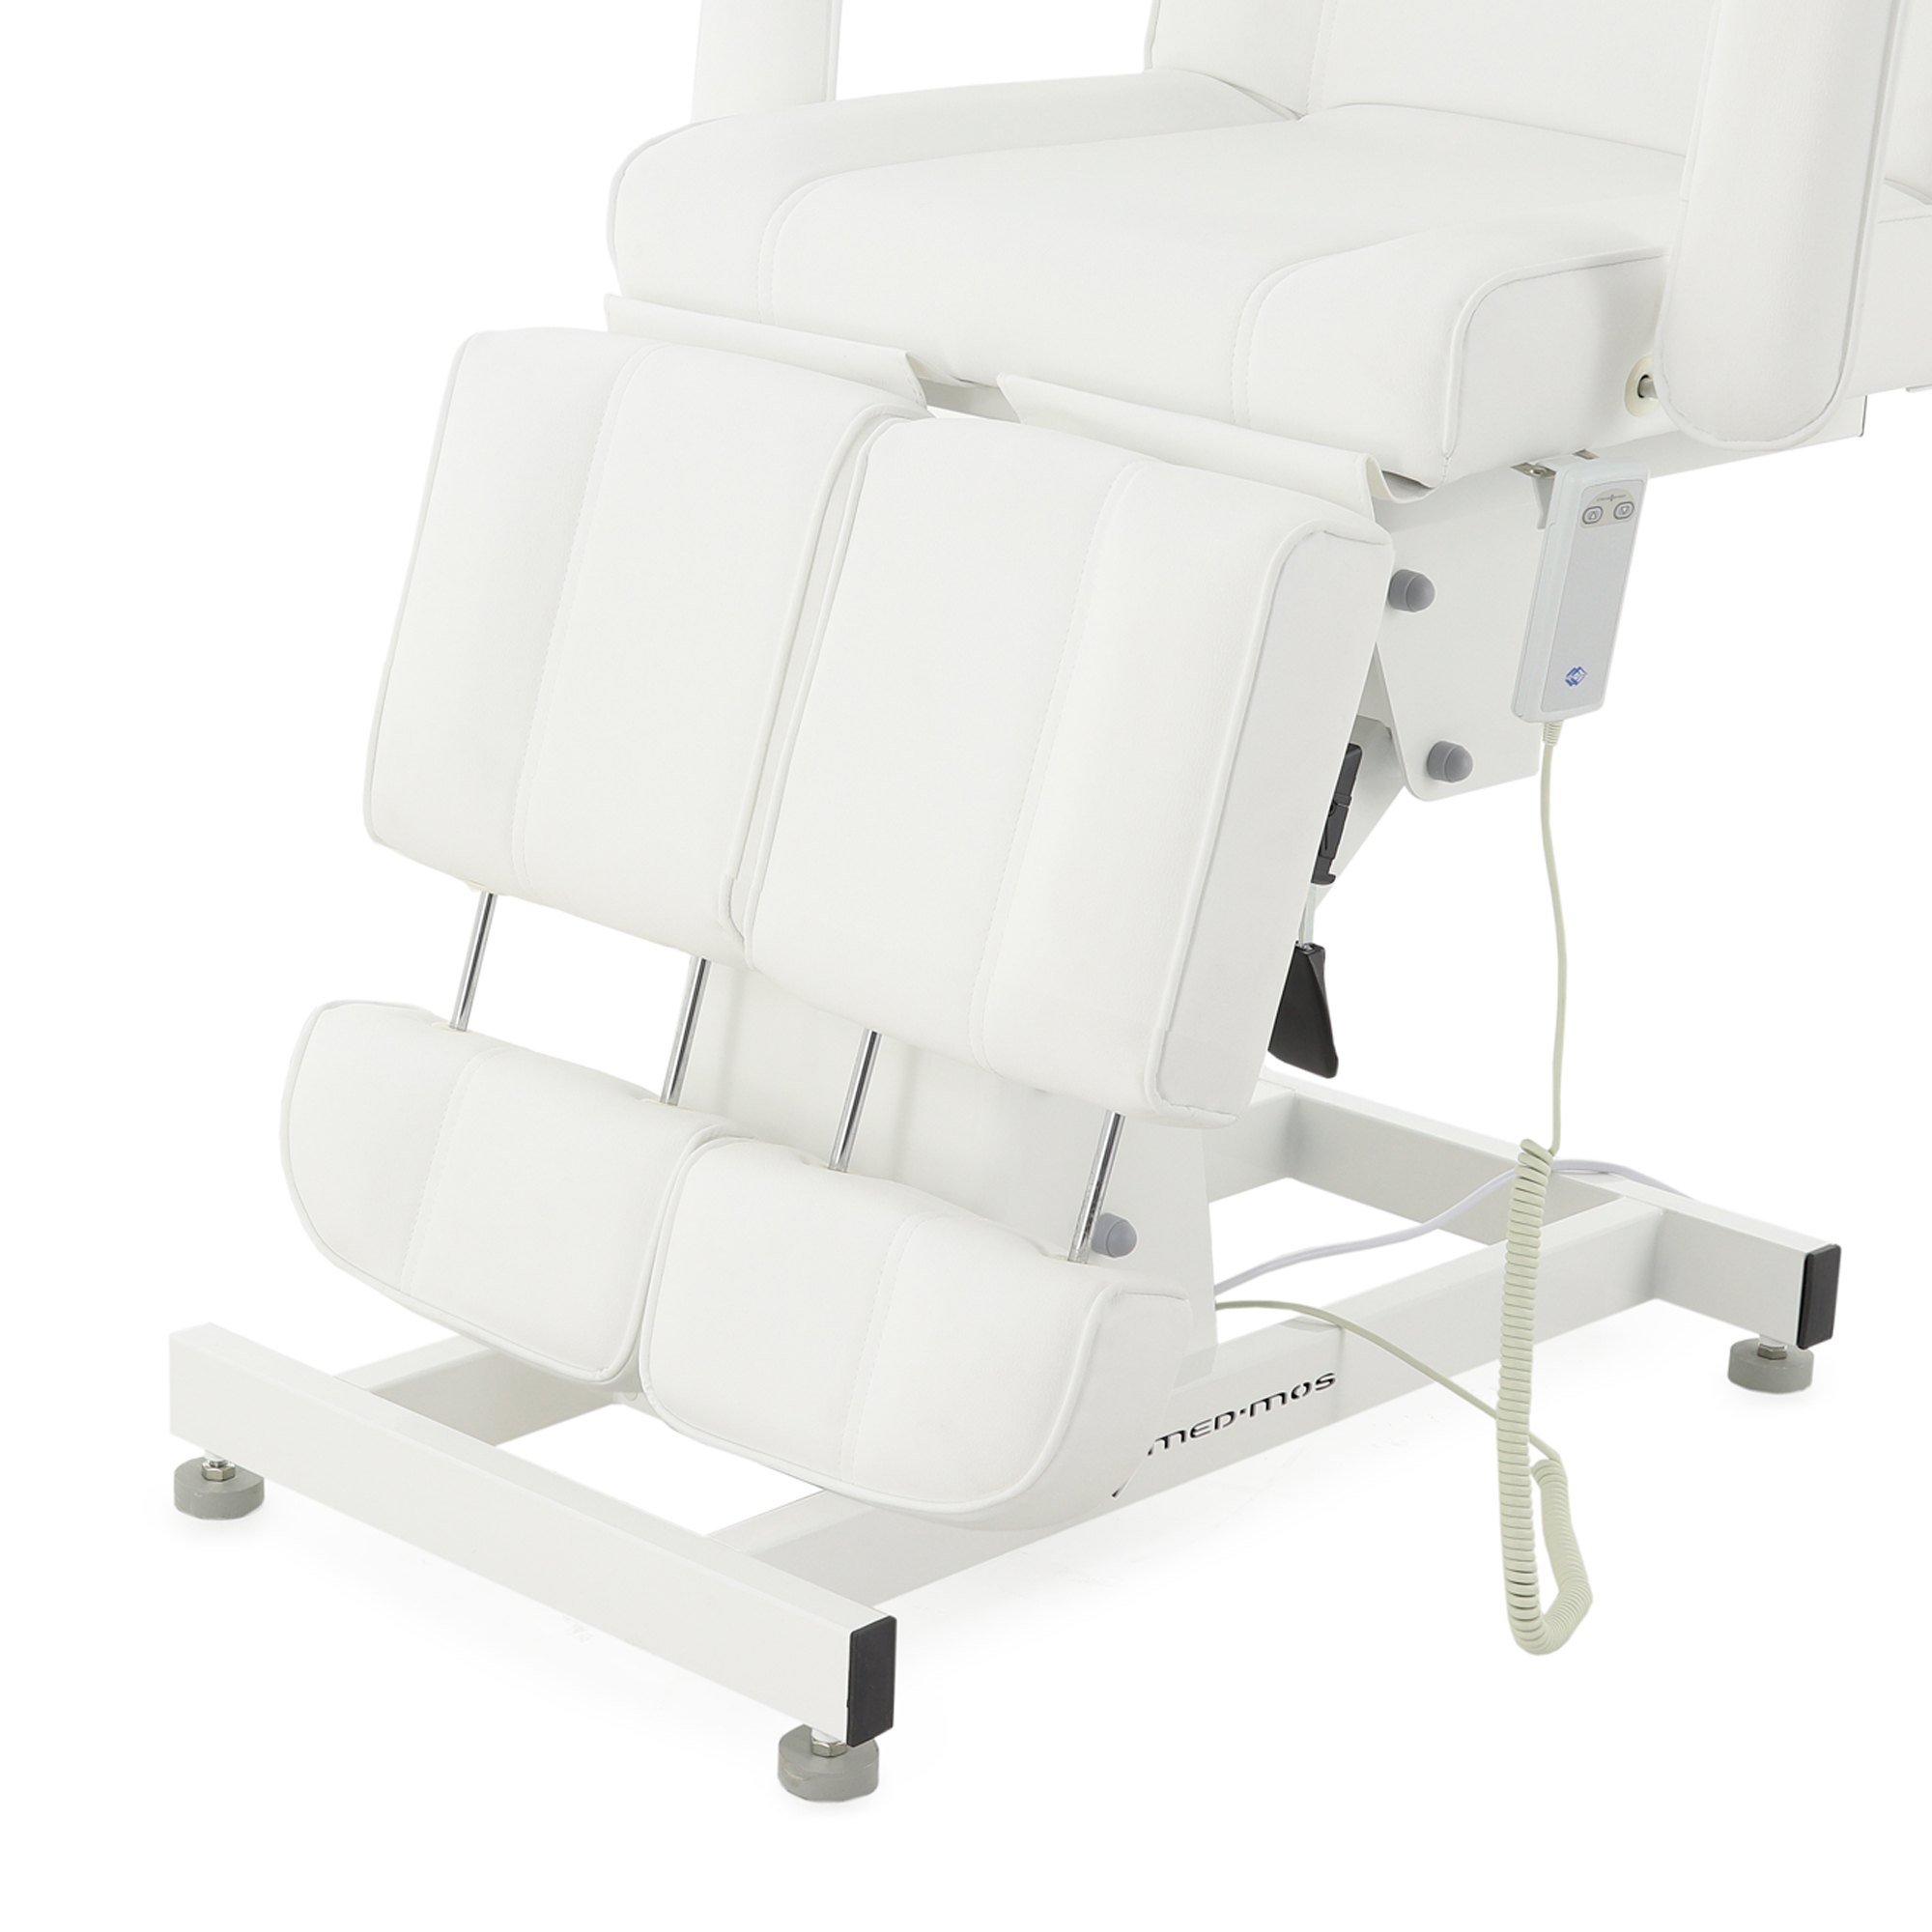 Педикюрное кресло электрическое ММКК-1 (КО-171.01) - 15 